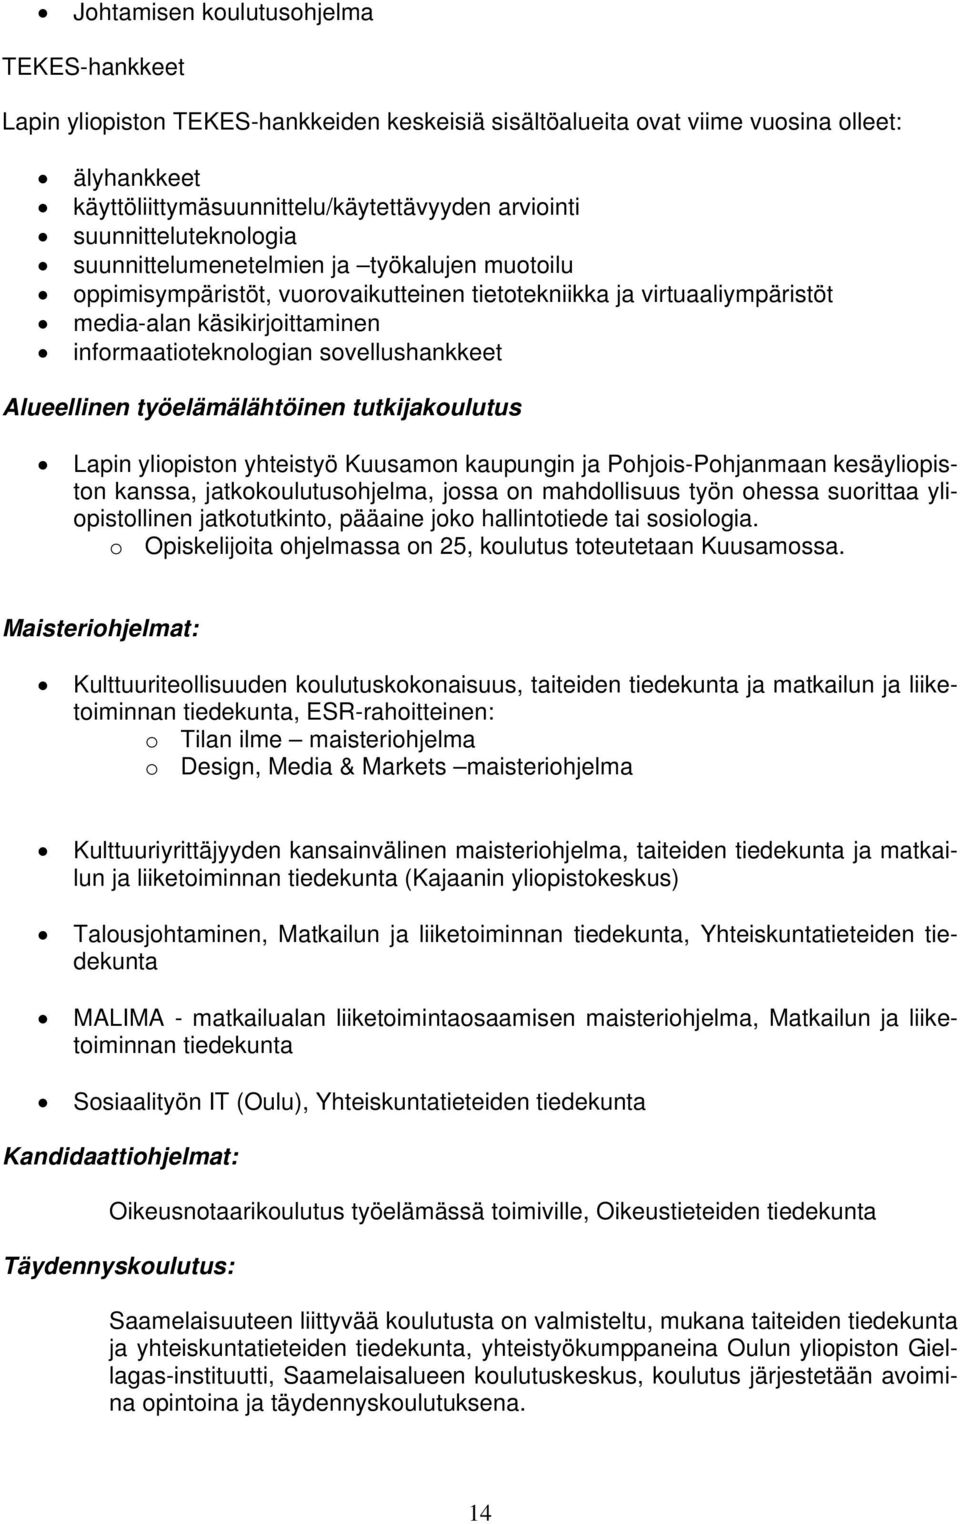 sovellushankkeet Alueellinen työelämälähtöinen tutkijakoulutus Lapin yliopiston yhteistyö Kuusamon kaupungin ja Pohjois-Pohjanmaan kesäyliopiston kanssa, jatkokoulutusohjelma, jossa on mahdollisuus